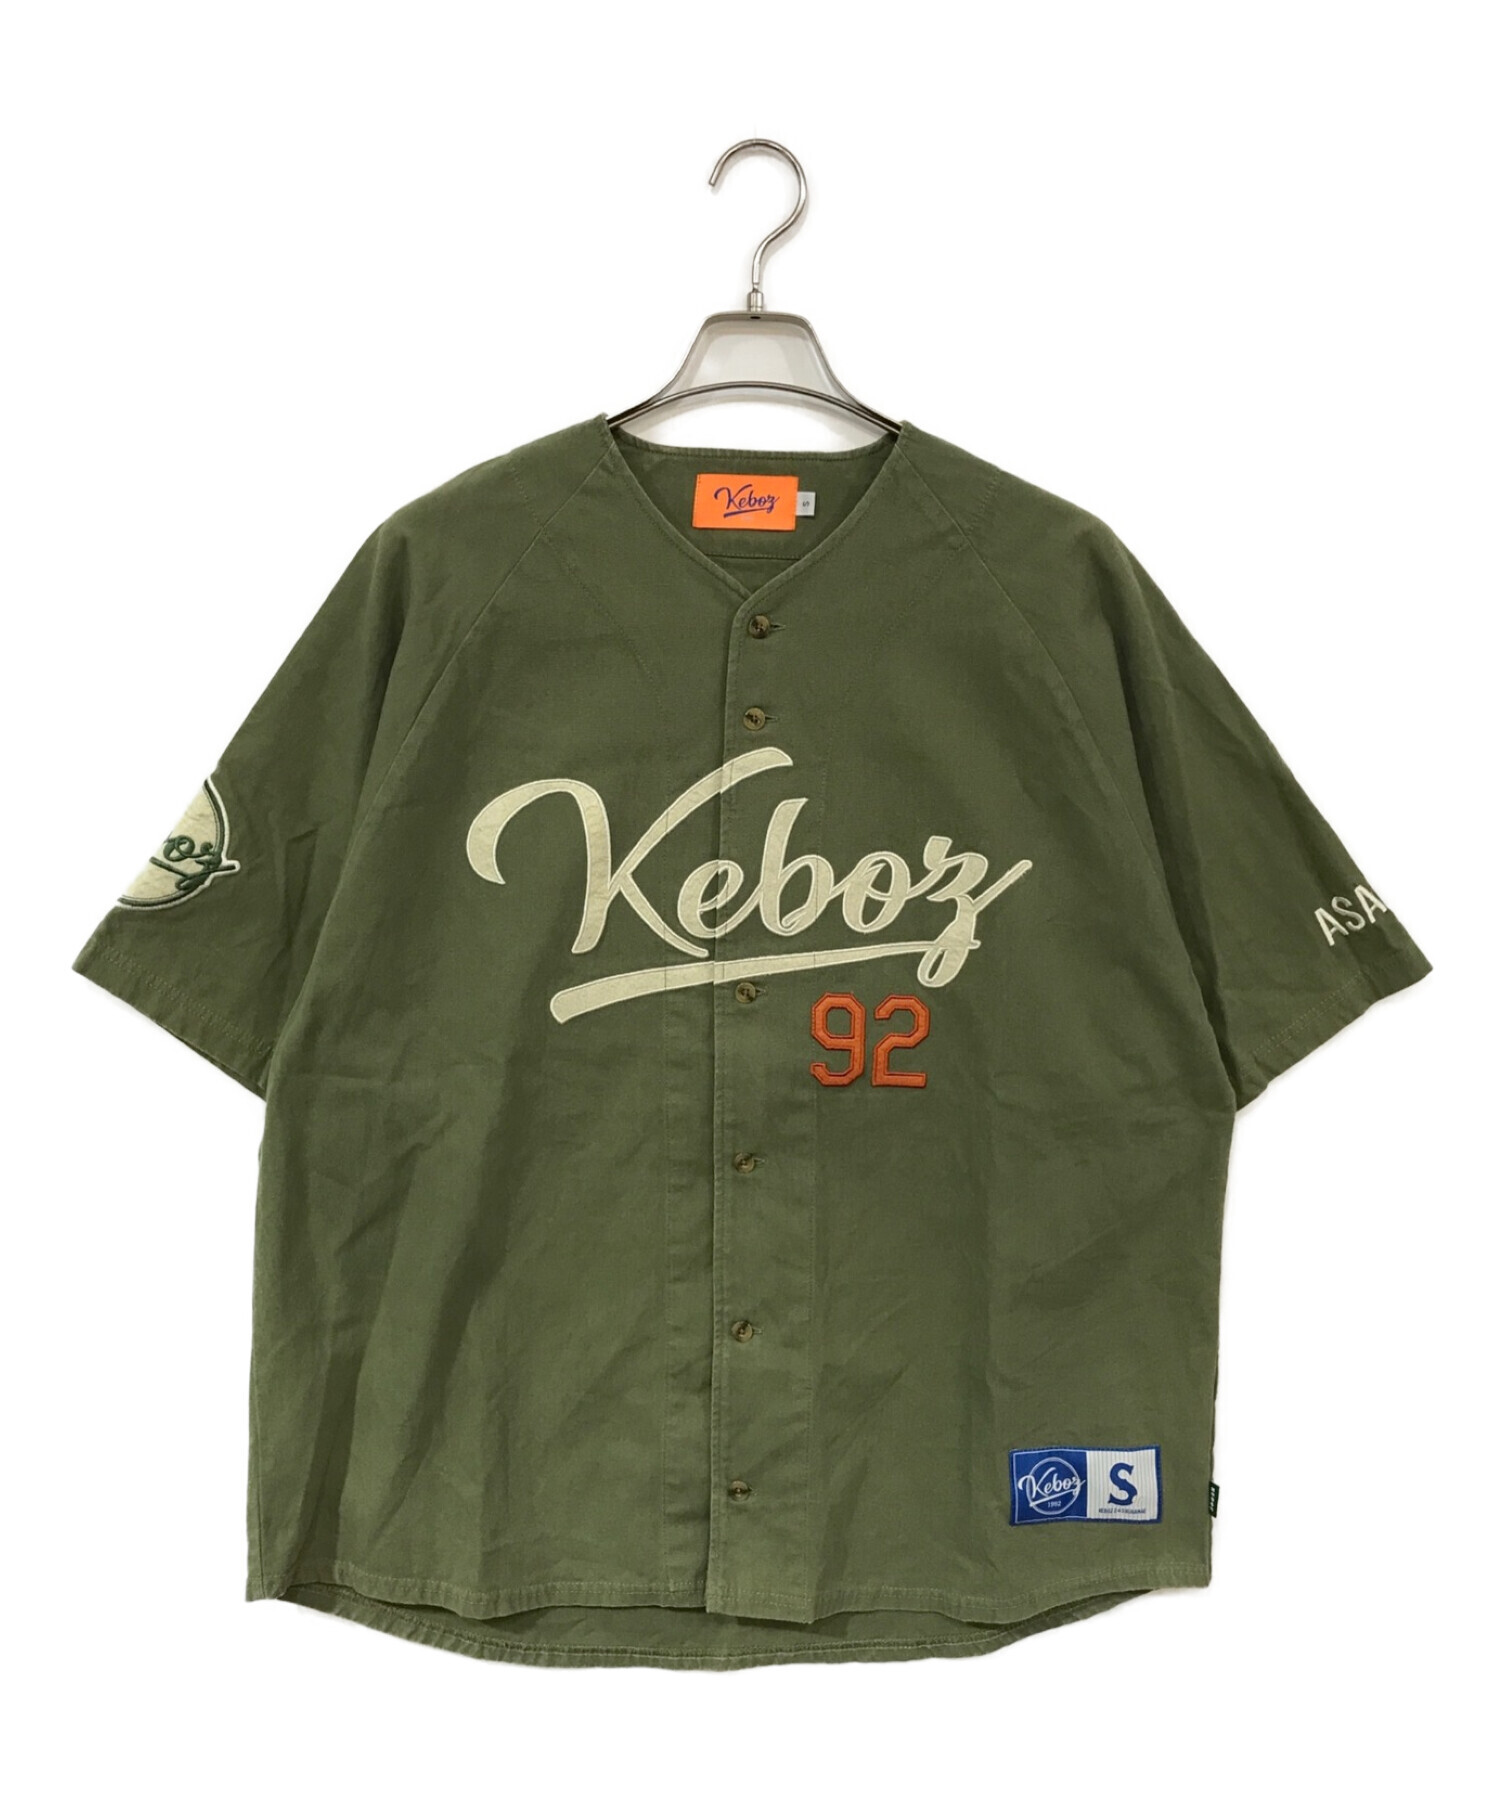 中古・古着通販】KEBOZ (ケボズ) ベースボールシャツ カーキ サイズ:S